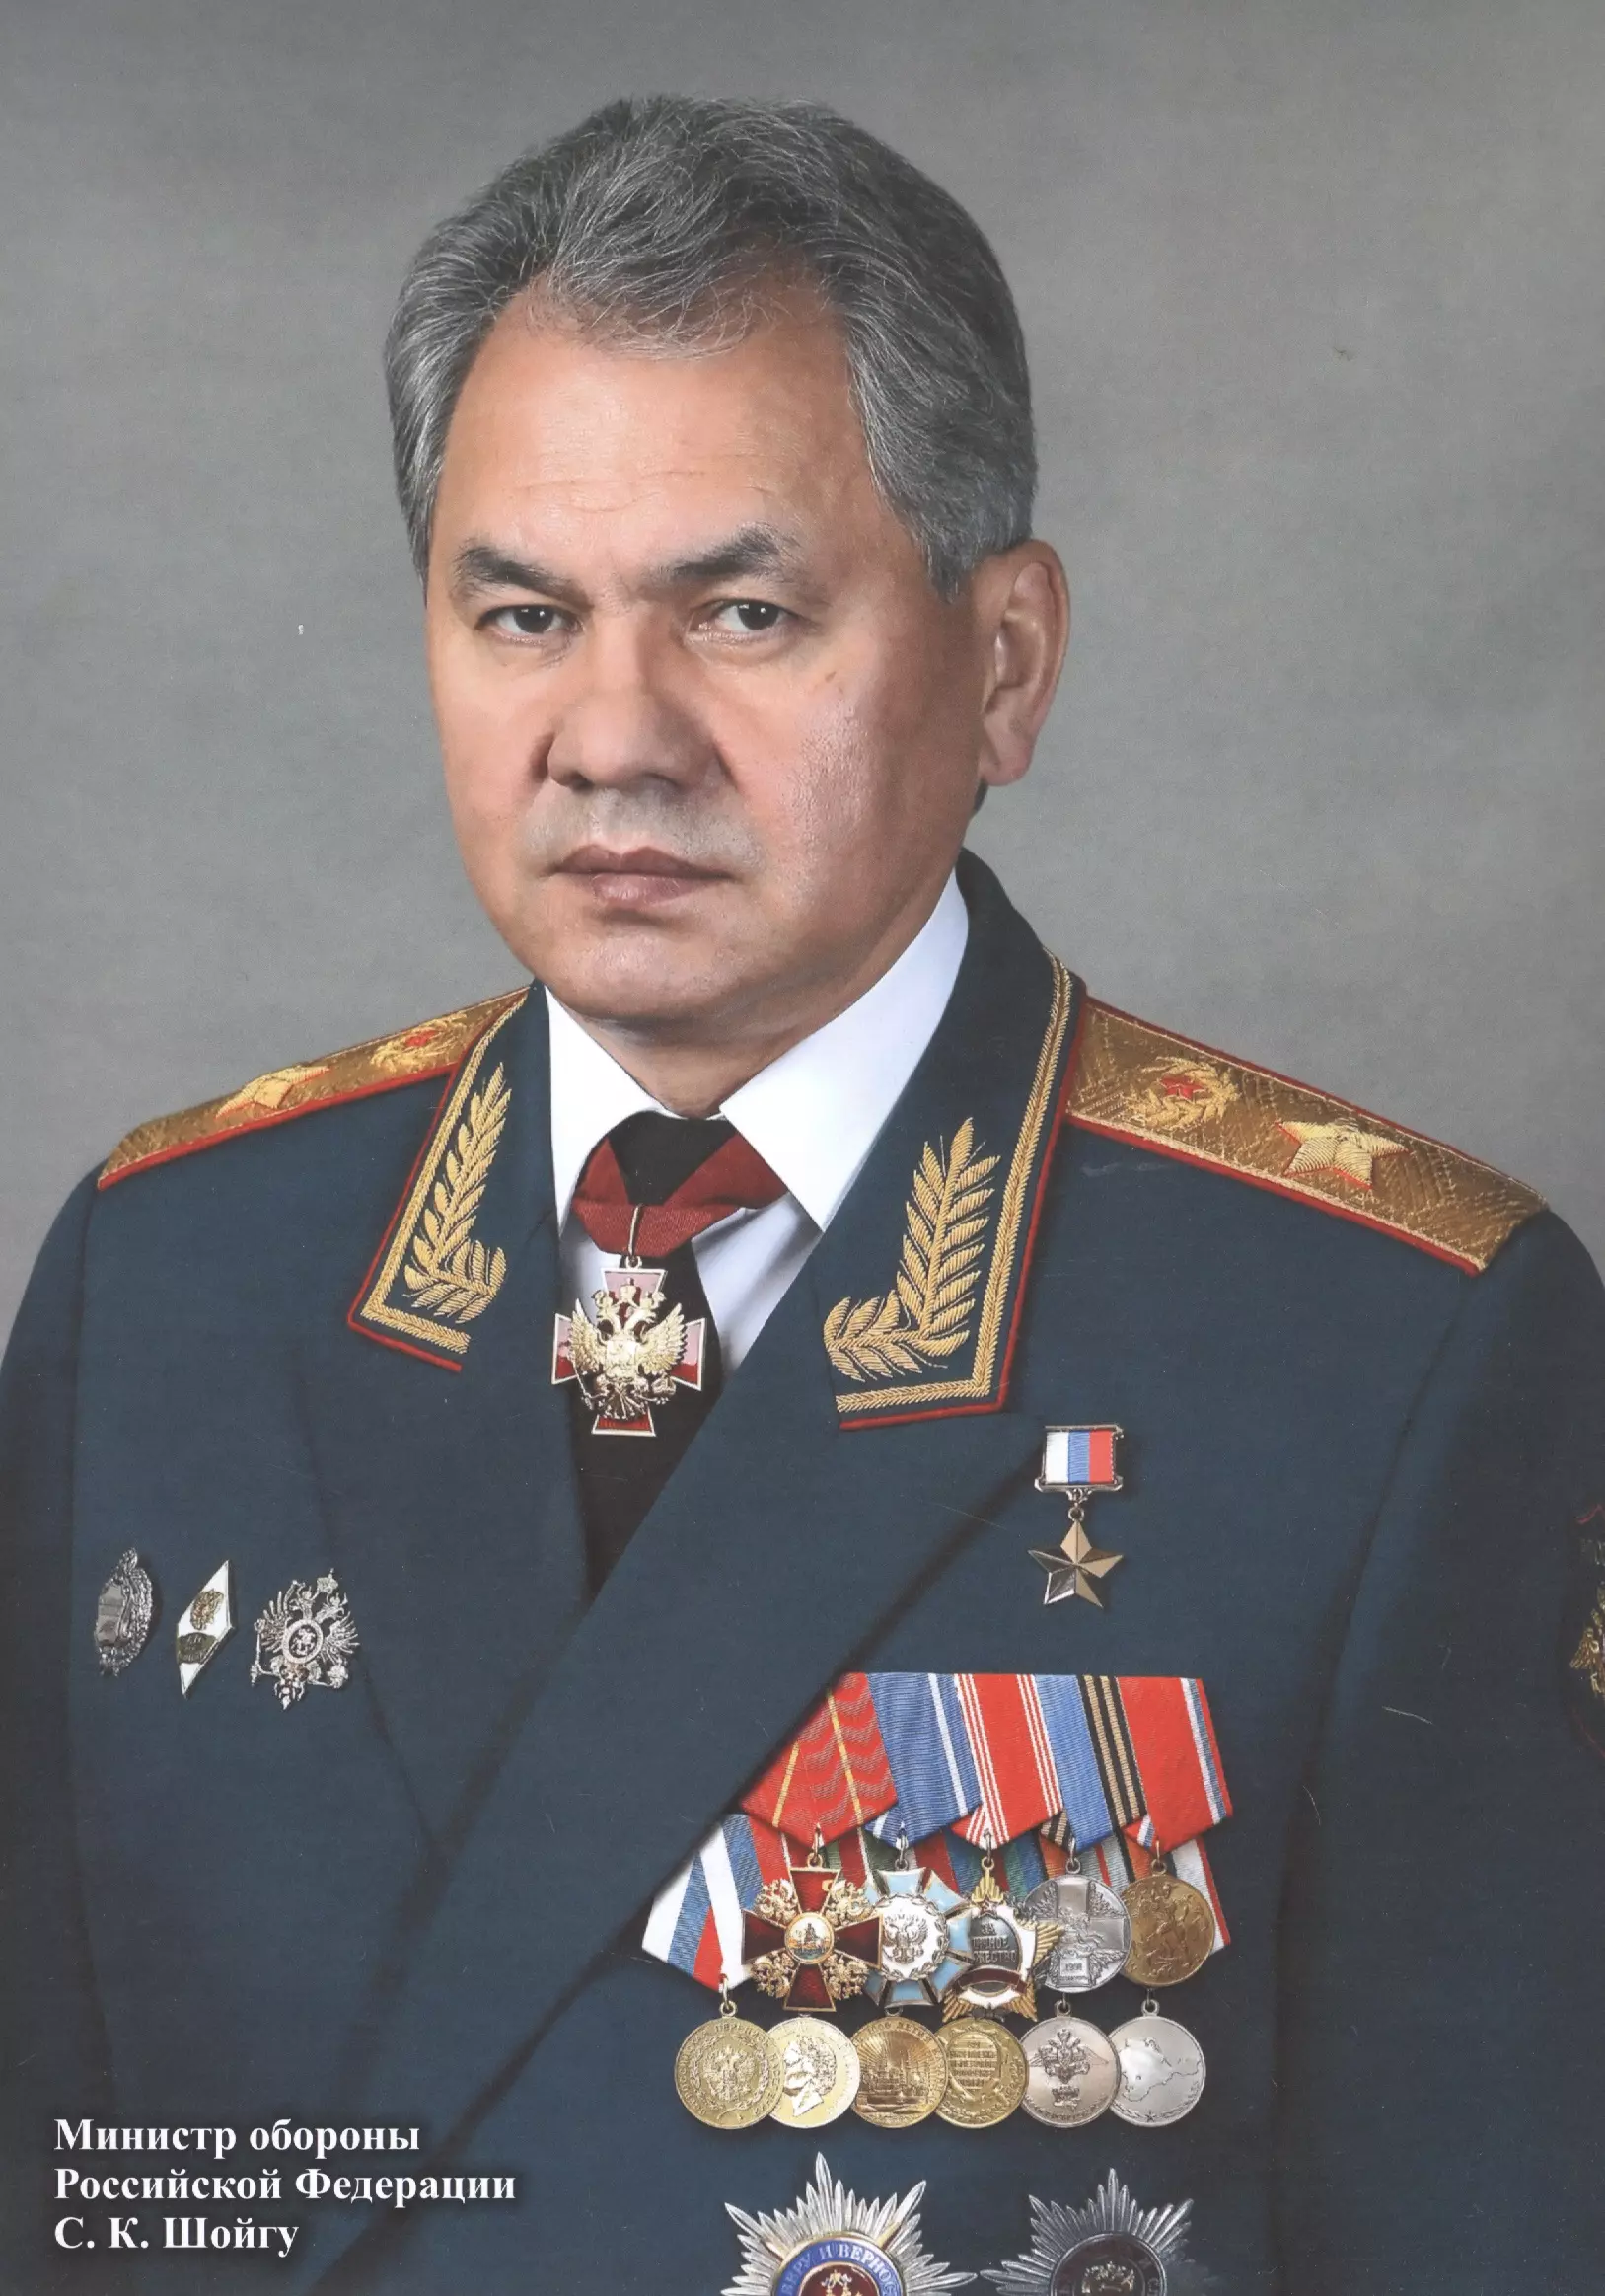 Сергей Кожугетович Шойг